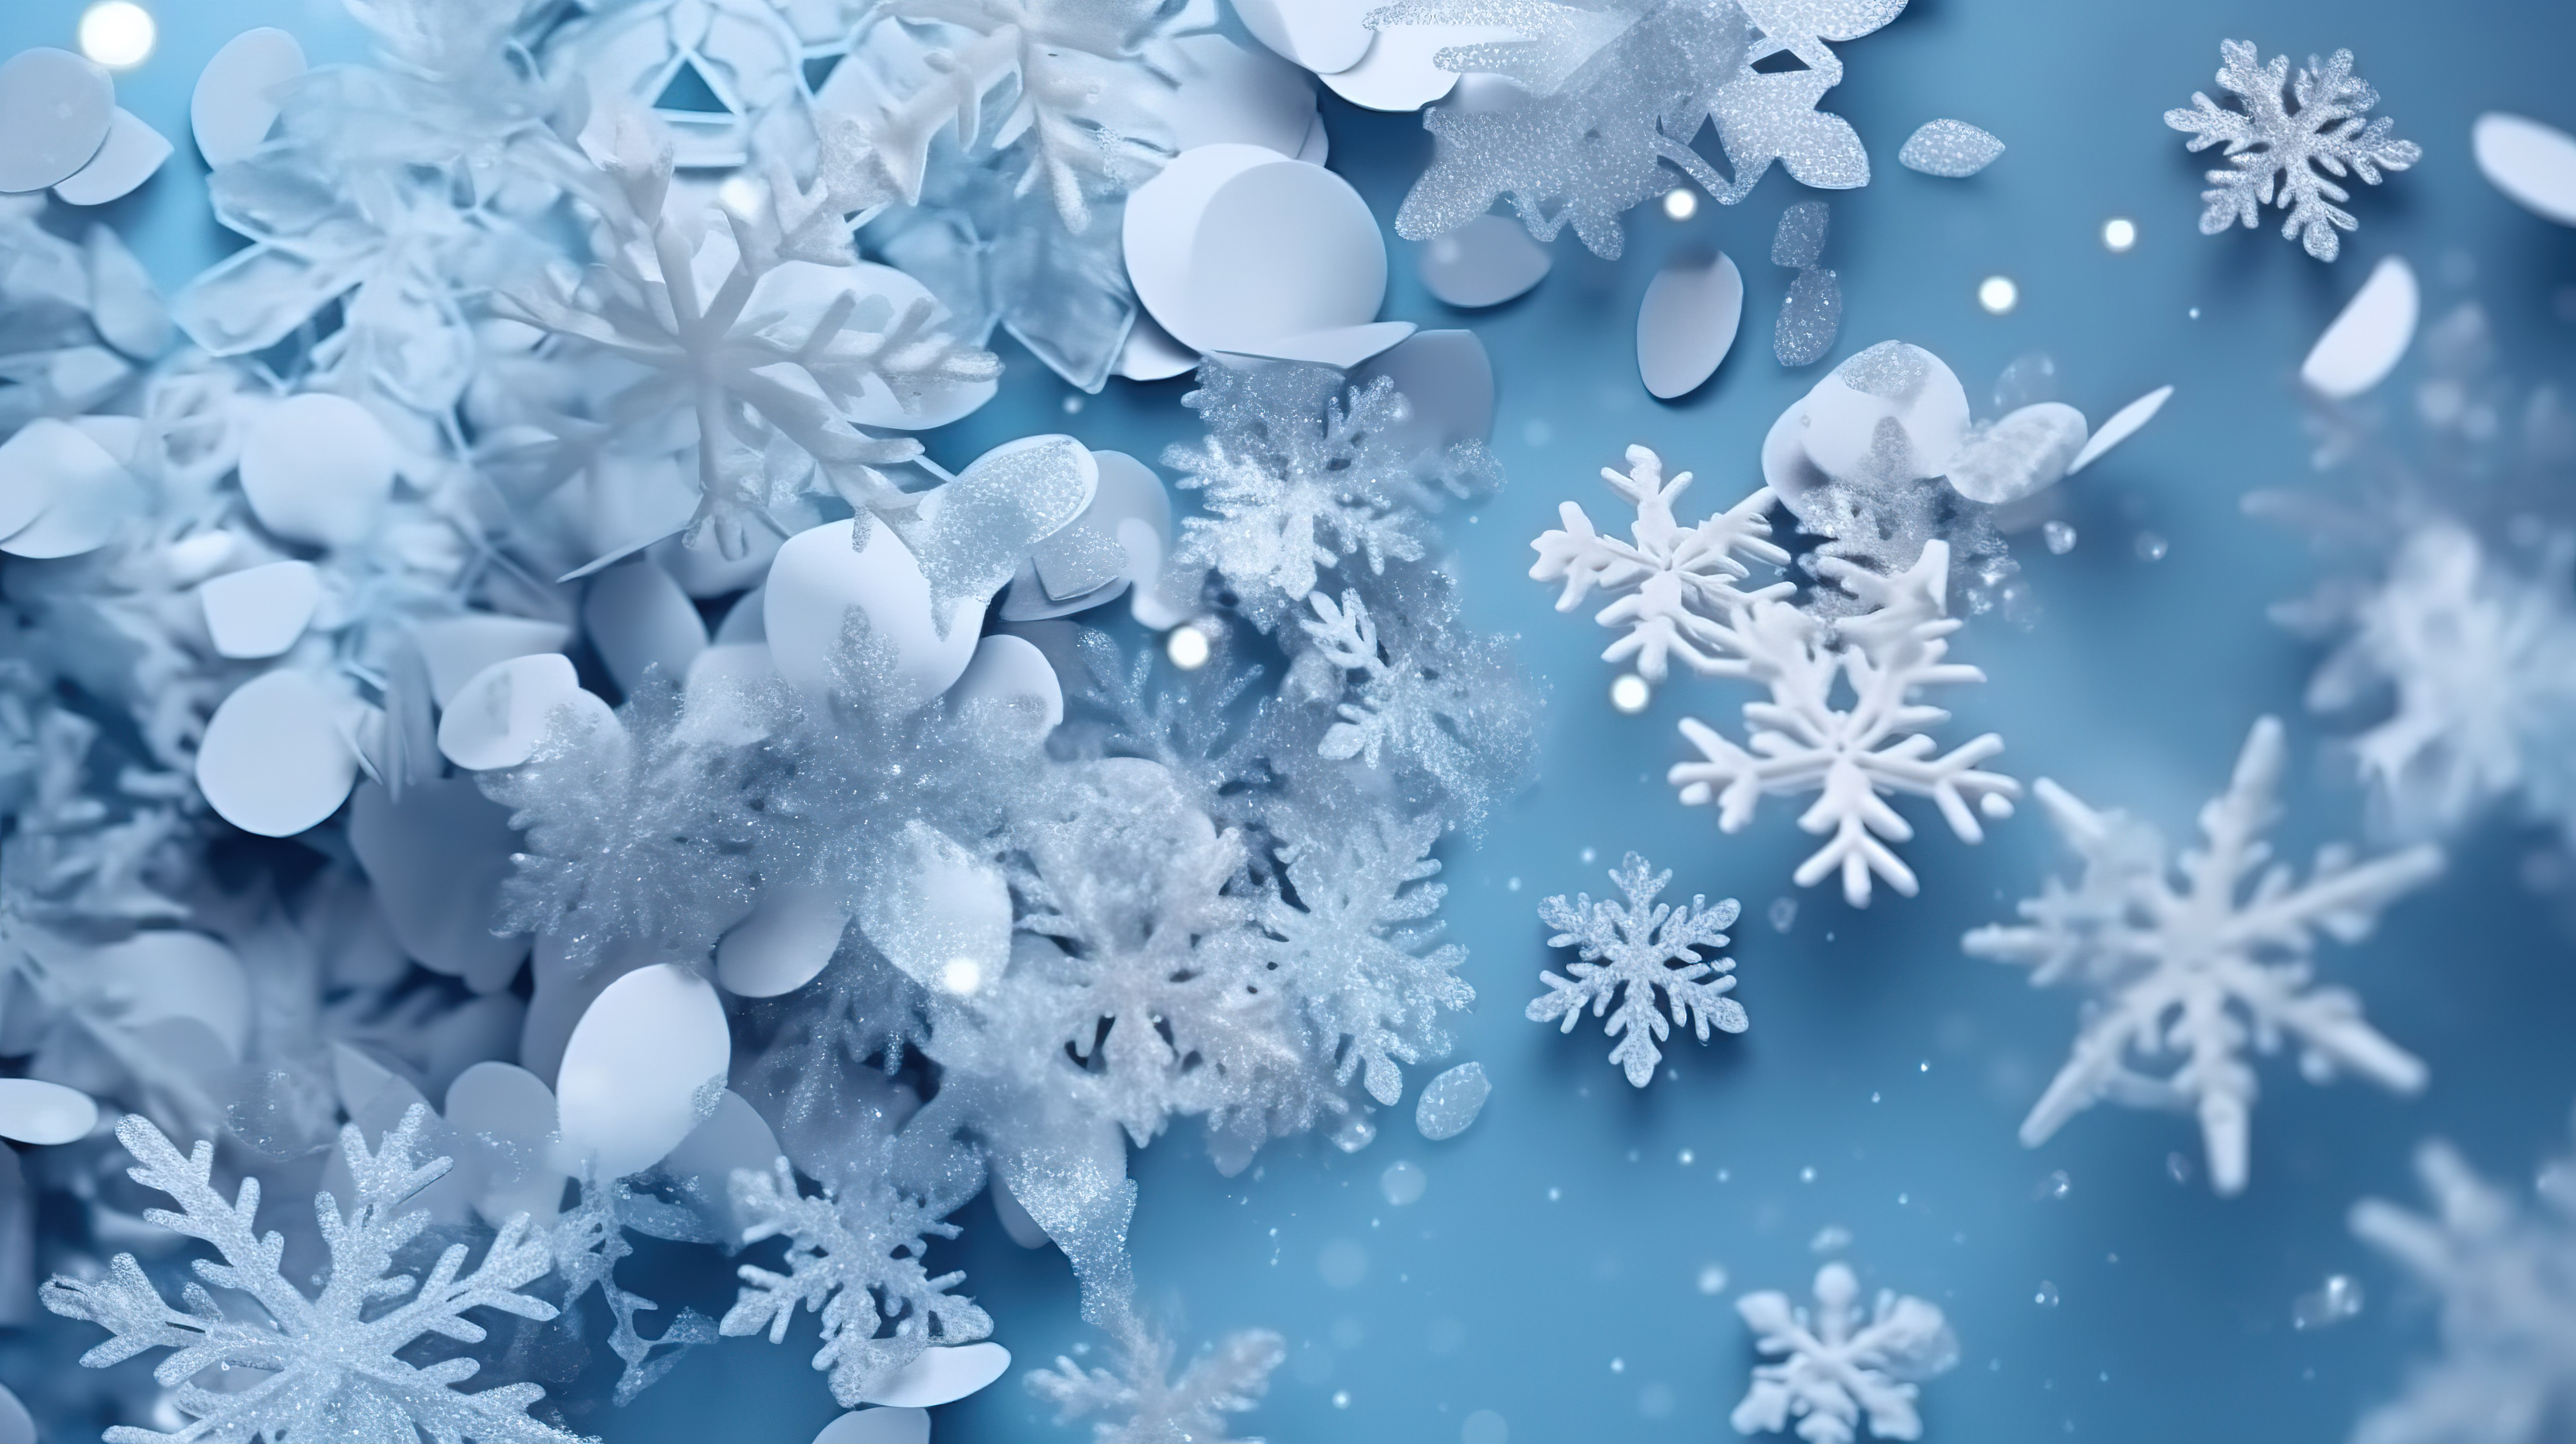 下雪的冬季仙境蓝色背景与 3d 飘落的圣诞雪花和节日装饰品图片